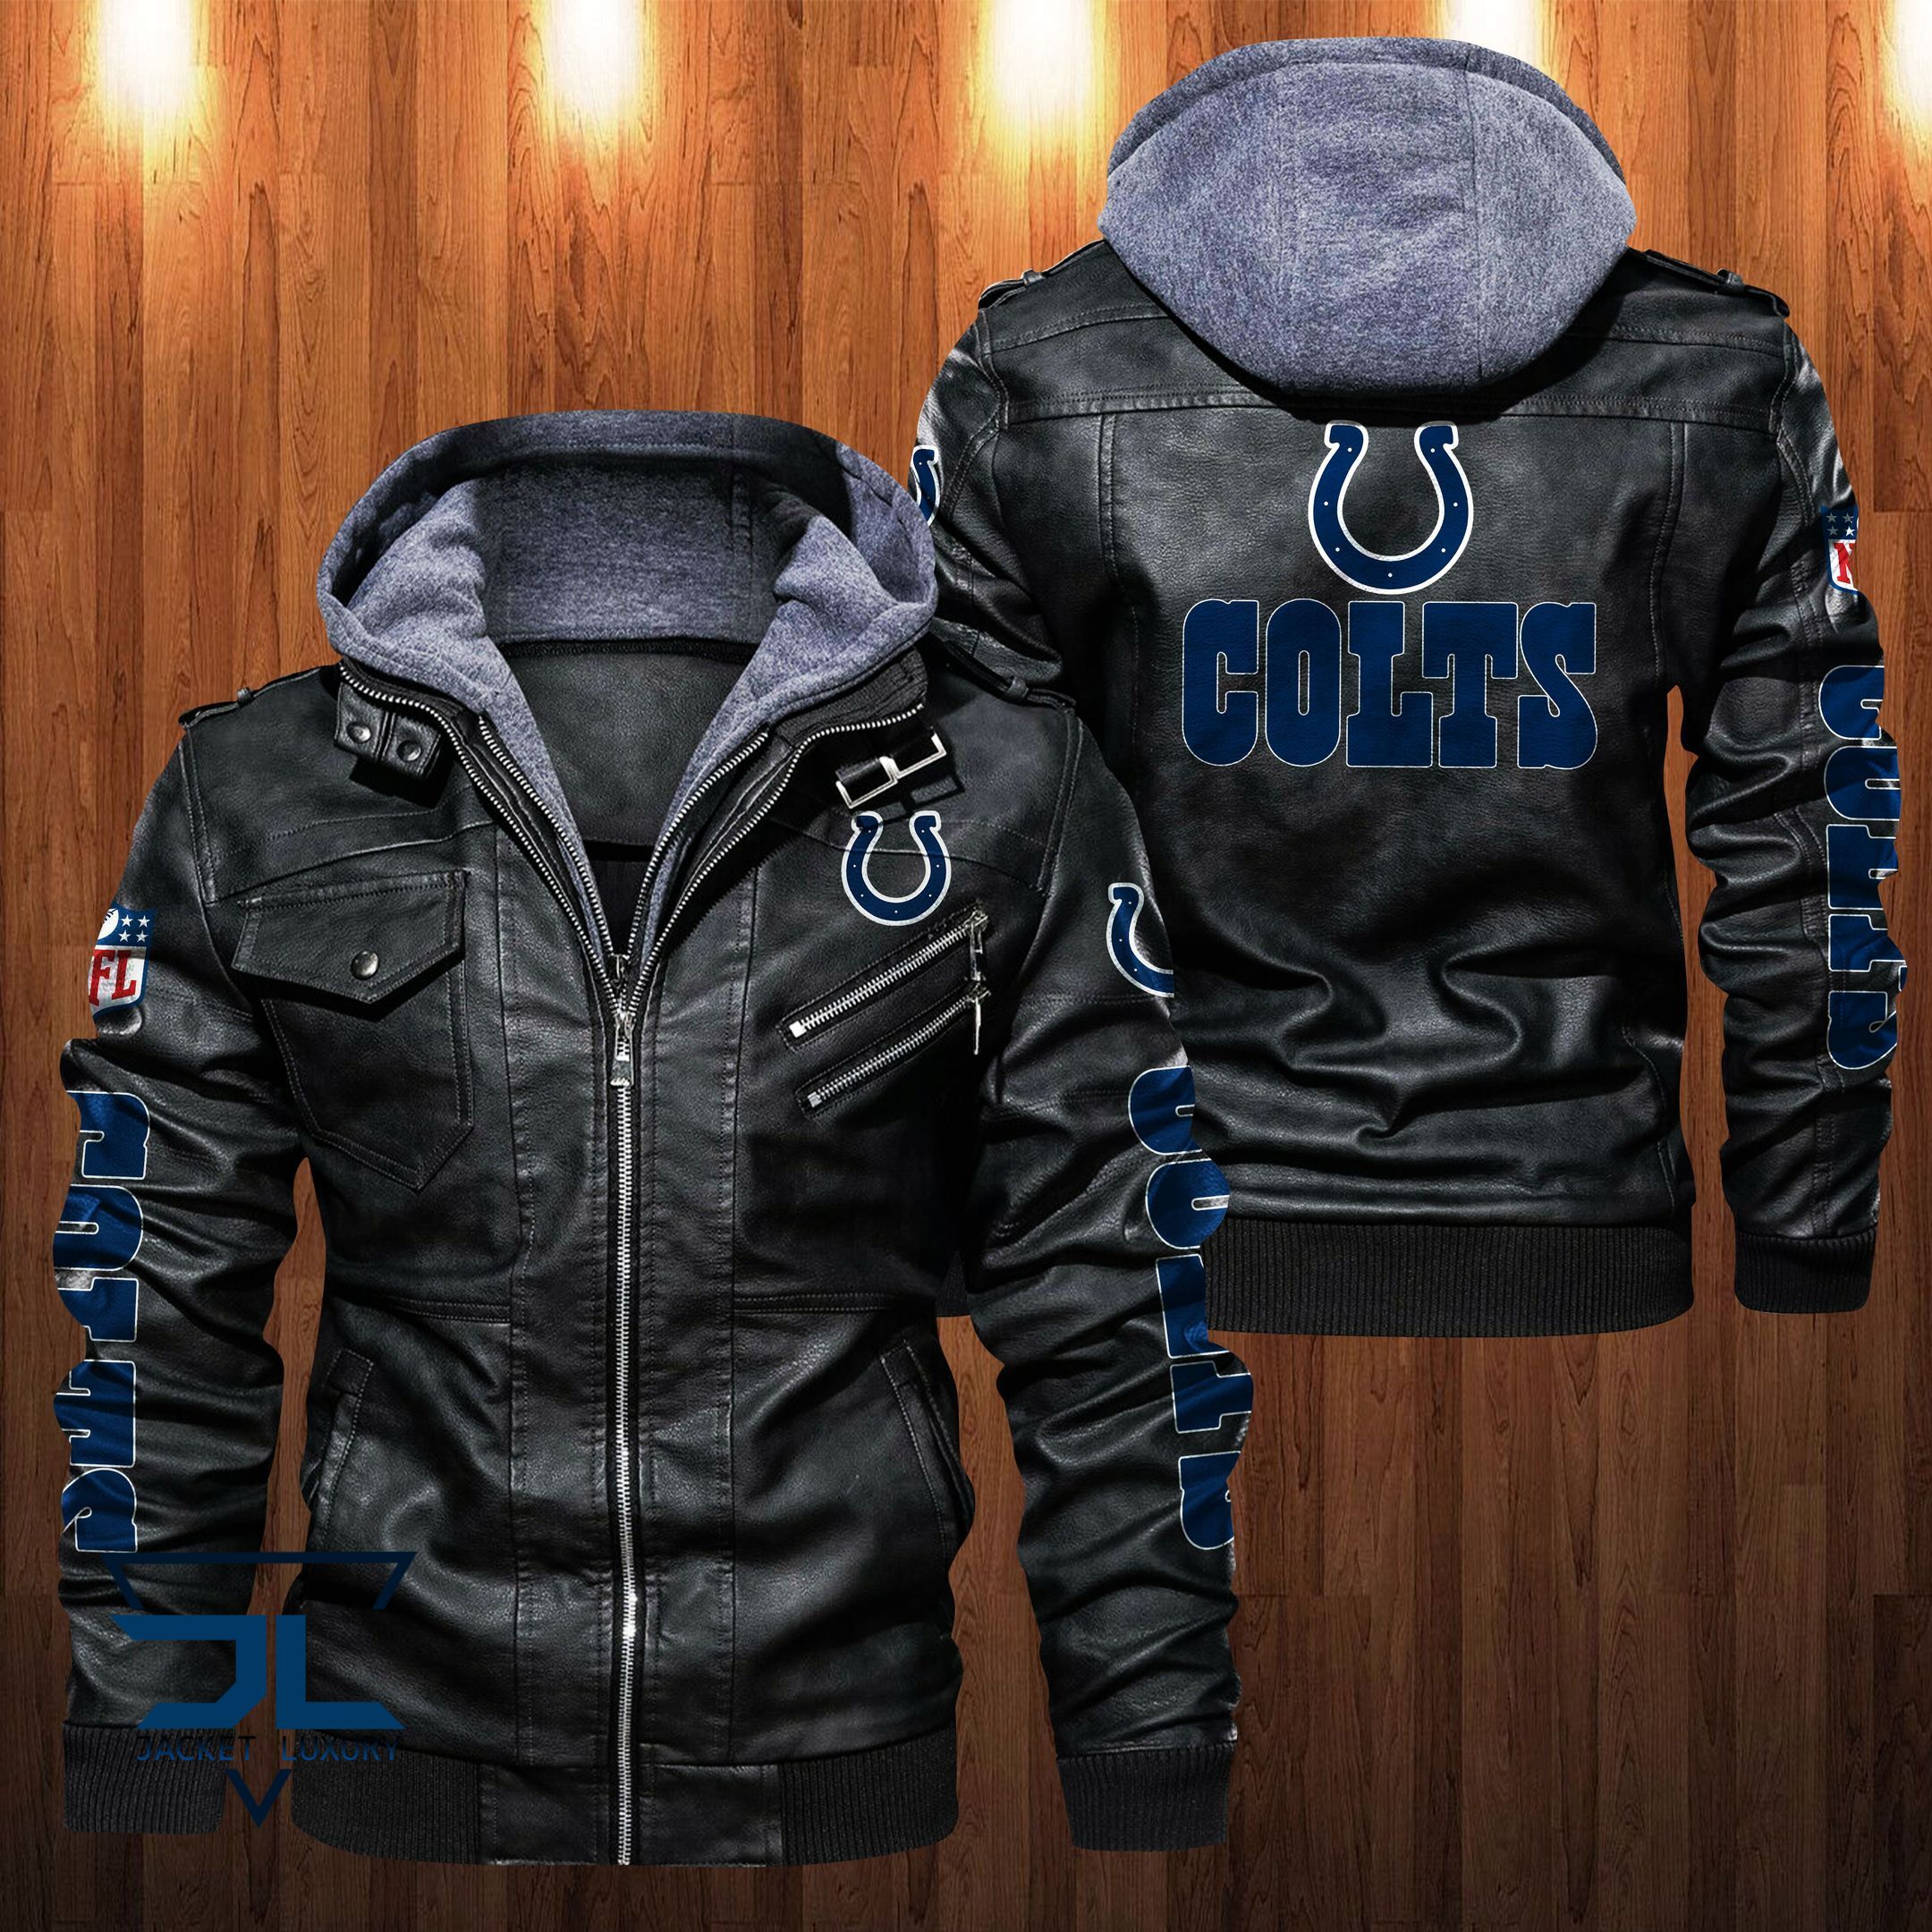 Get the best jackets under $100! 255